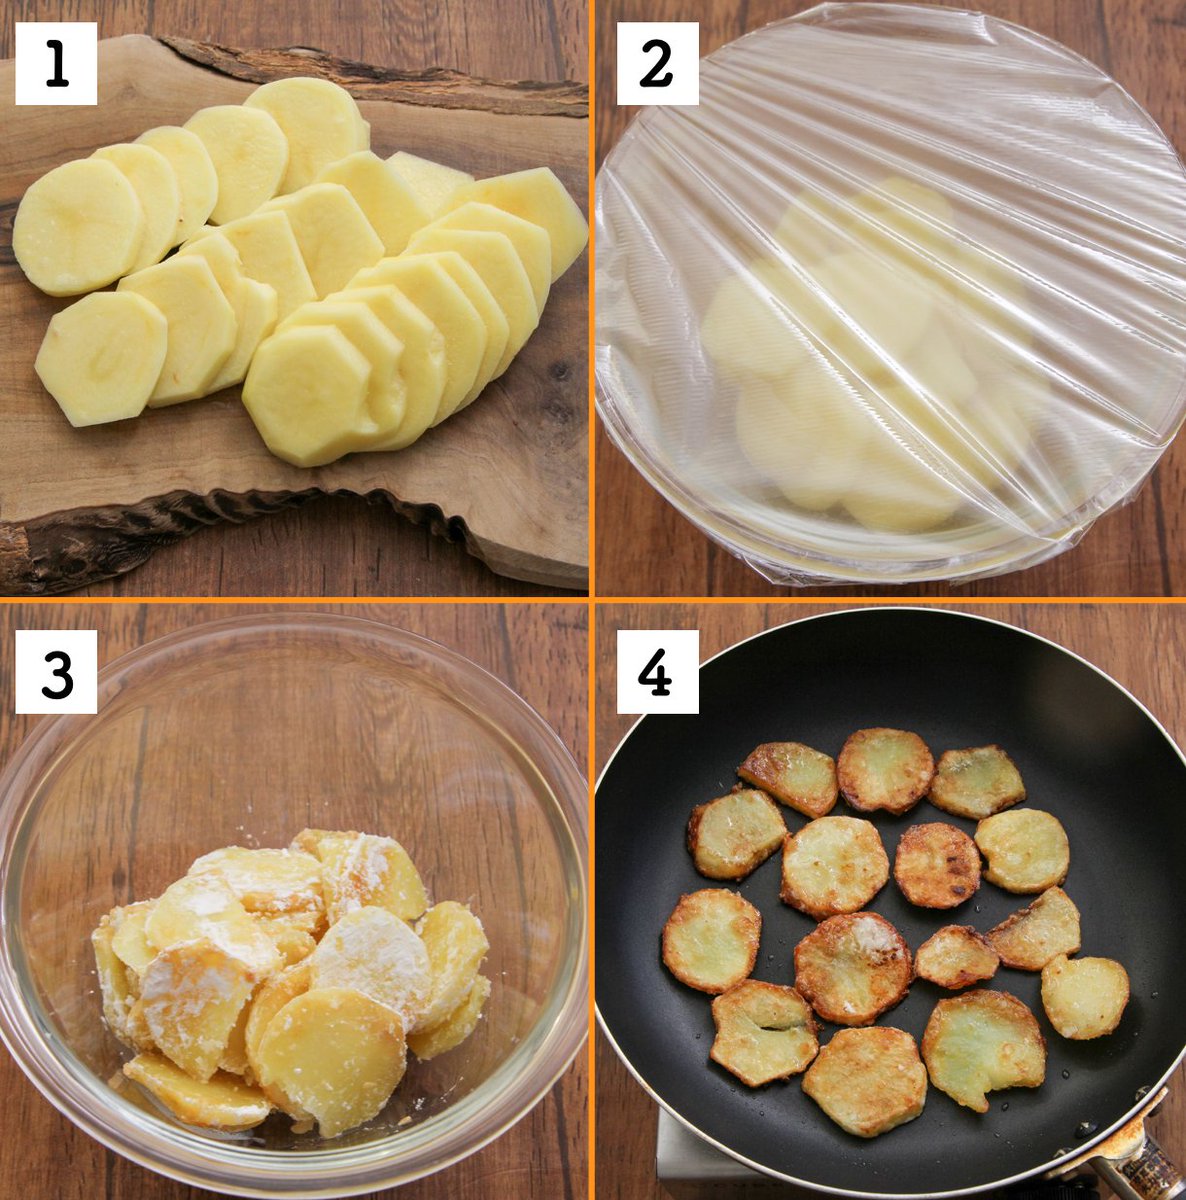 揚げずに簡単!輪切りじゃが芋で作る「フライドポテト」